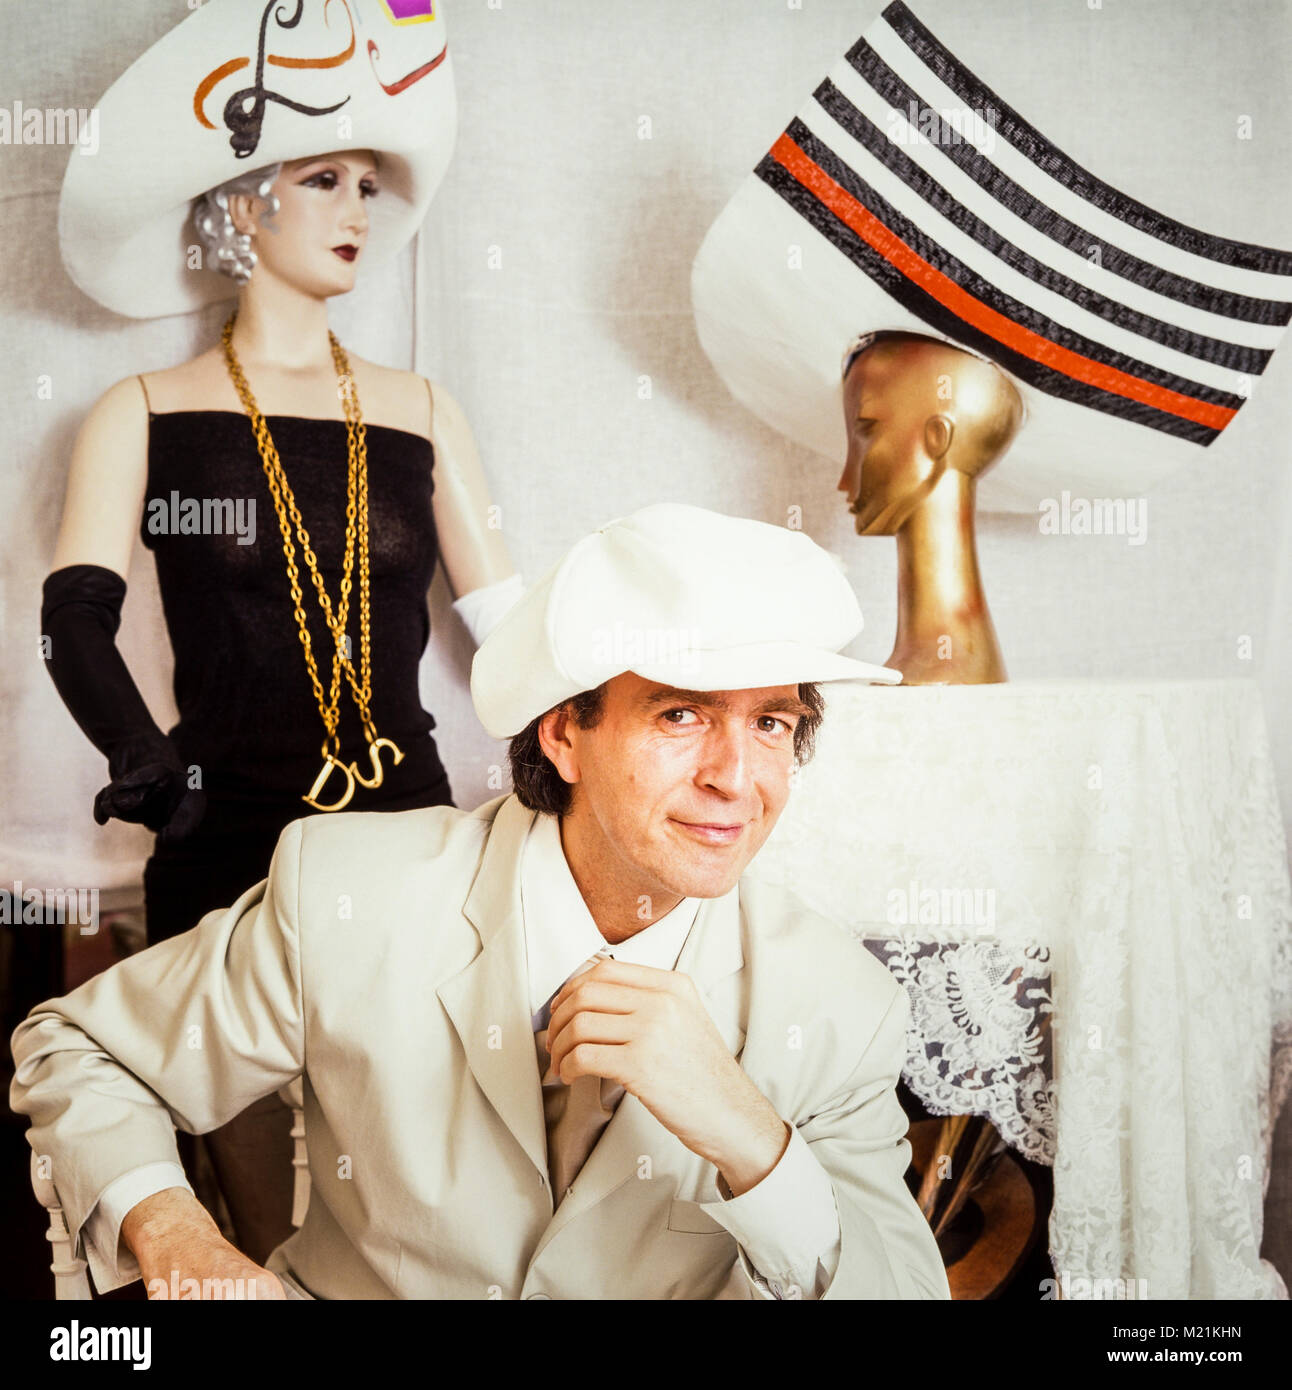 David scellino modista, moda, hat designer, sinonimo con la progettazione di cappelli stravaganti e abbigliamento visualizzati sul giorno delle donne presso il Royal Ascot, Fotografata a Londra, 1990 Foto Stock